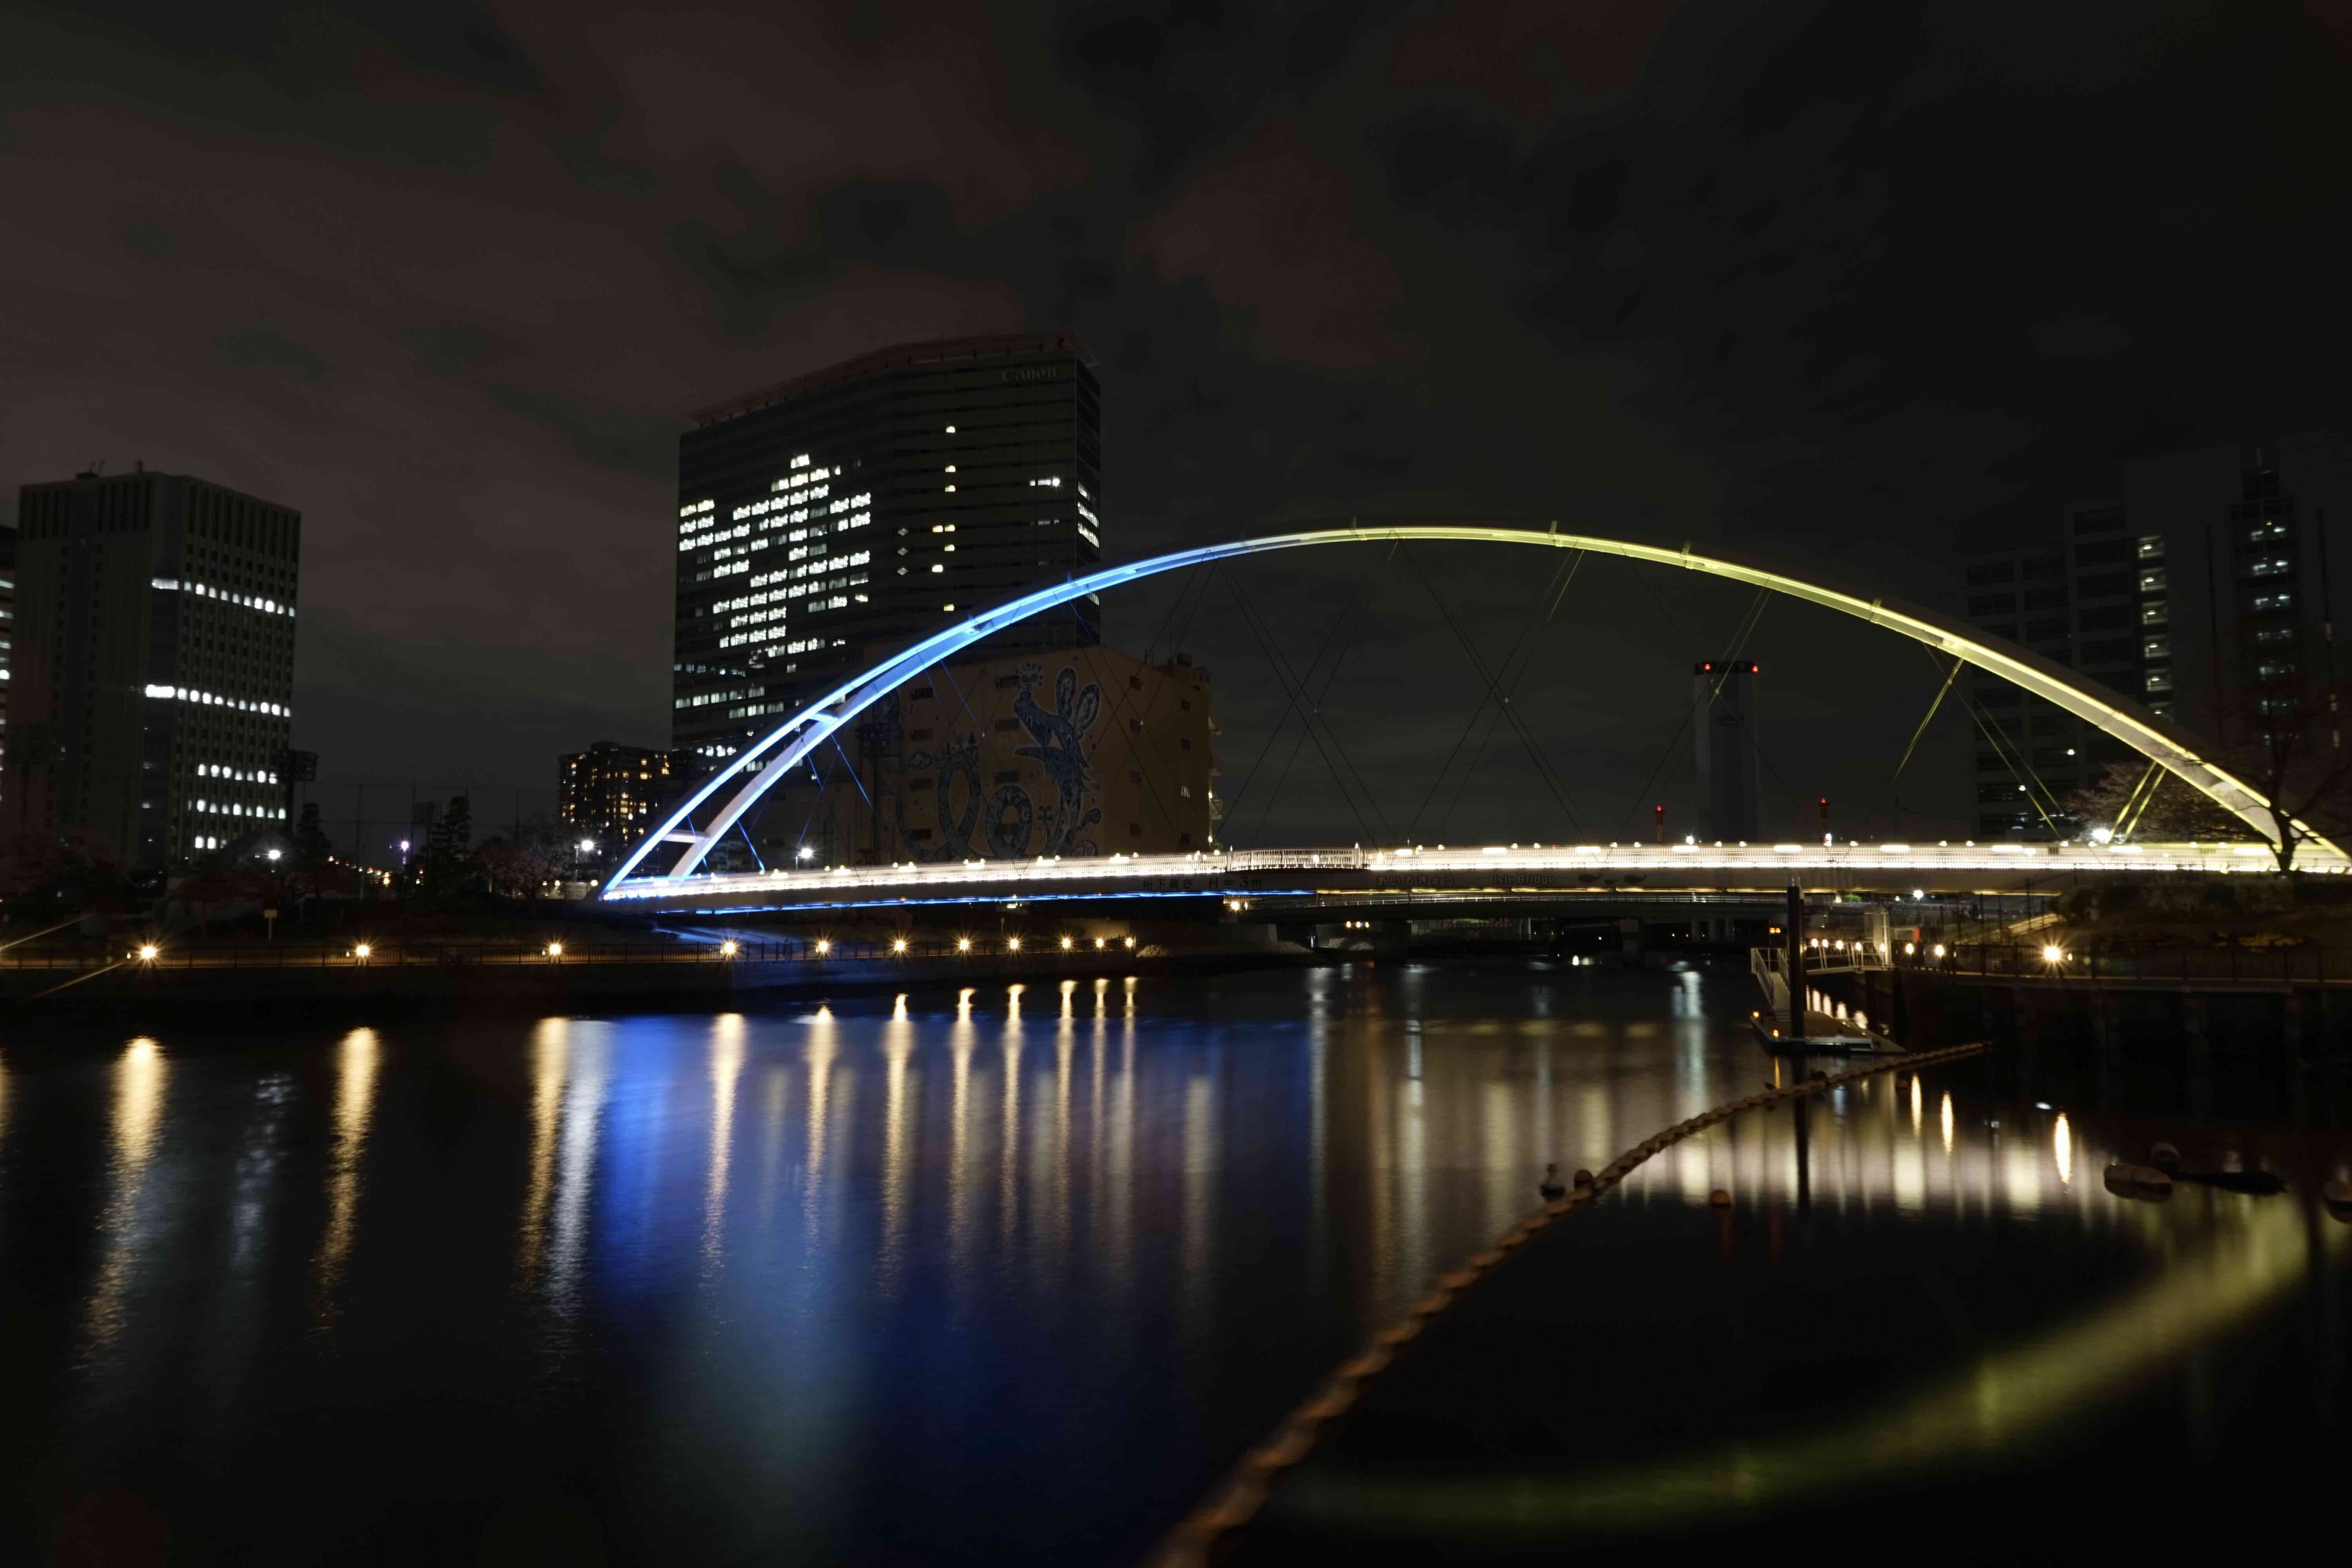 ライトアップされている橋の写真